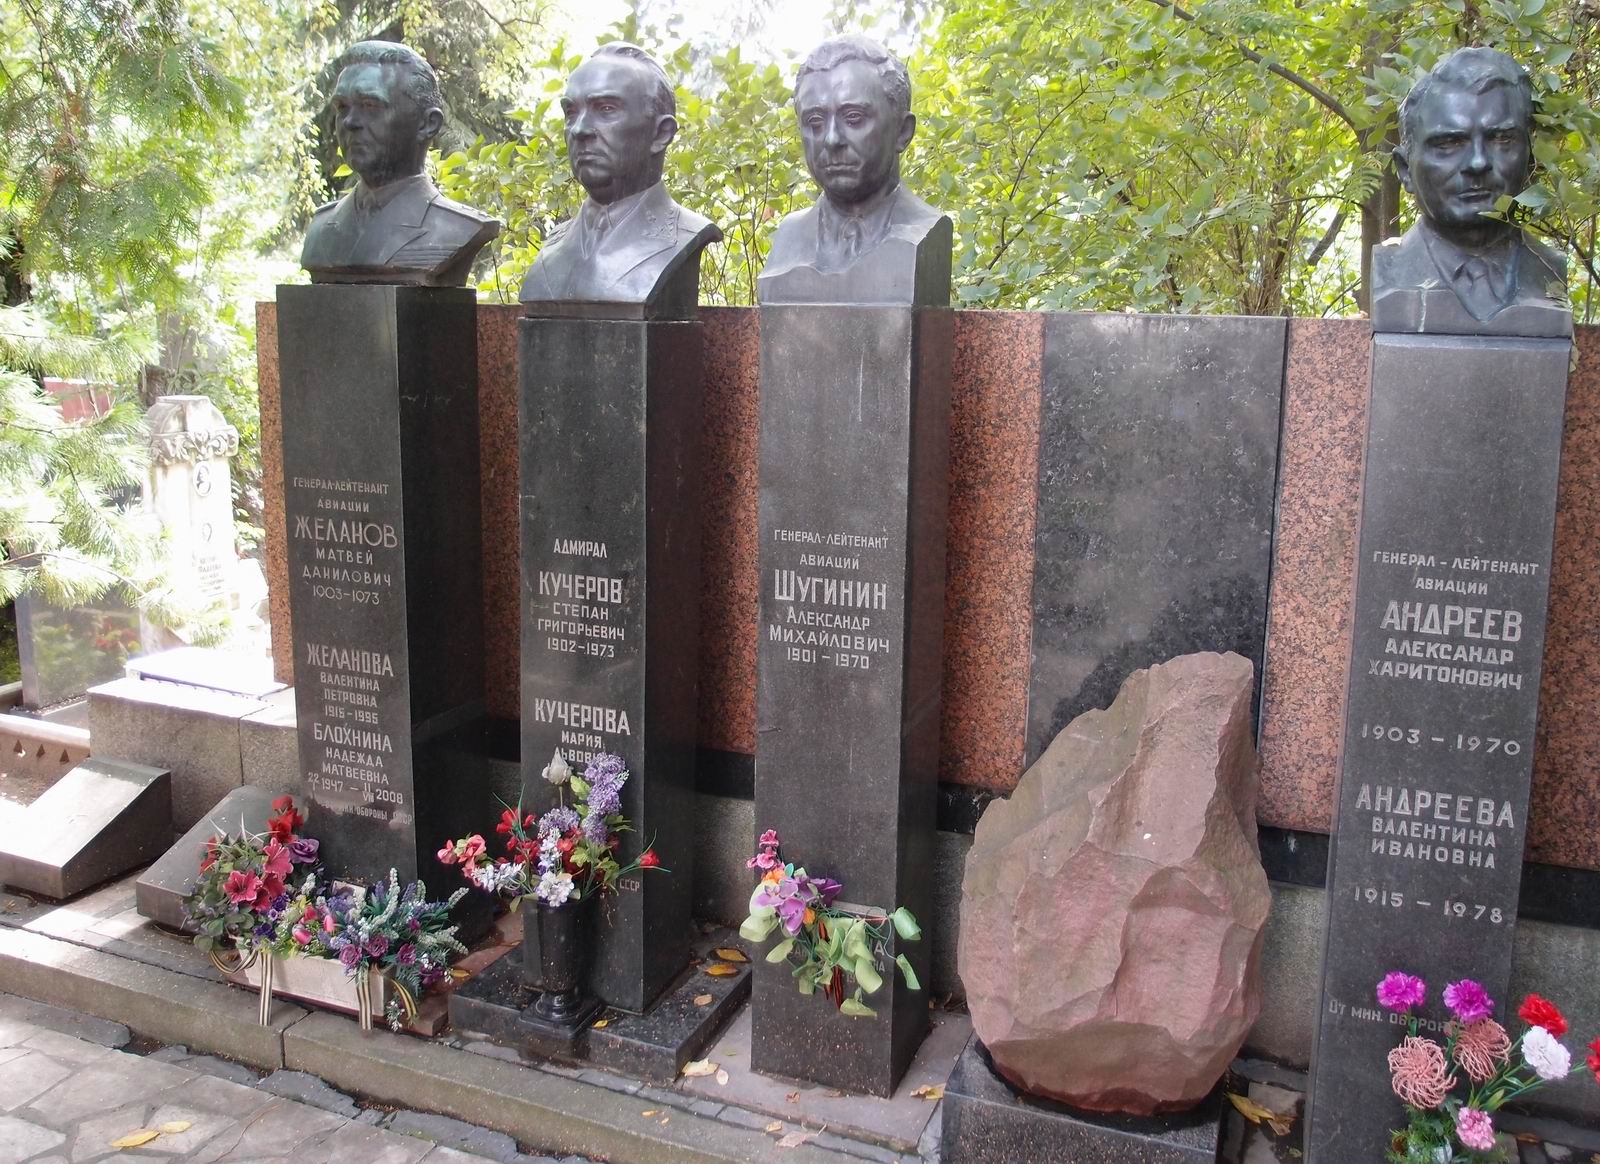 Памятник на могиле Шугинина А.М. (1901-1970), ск. А.Елецкий, арх. П.Ботвинников, на Новодевичьем кладбище (1-43-7). Нажмите левую кнопку мыши чтобы увидеть комплекс полностью.